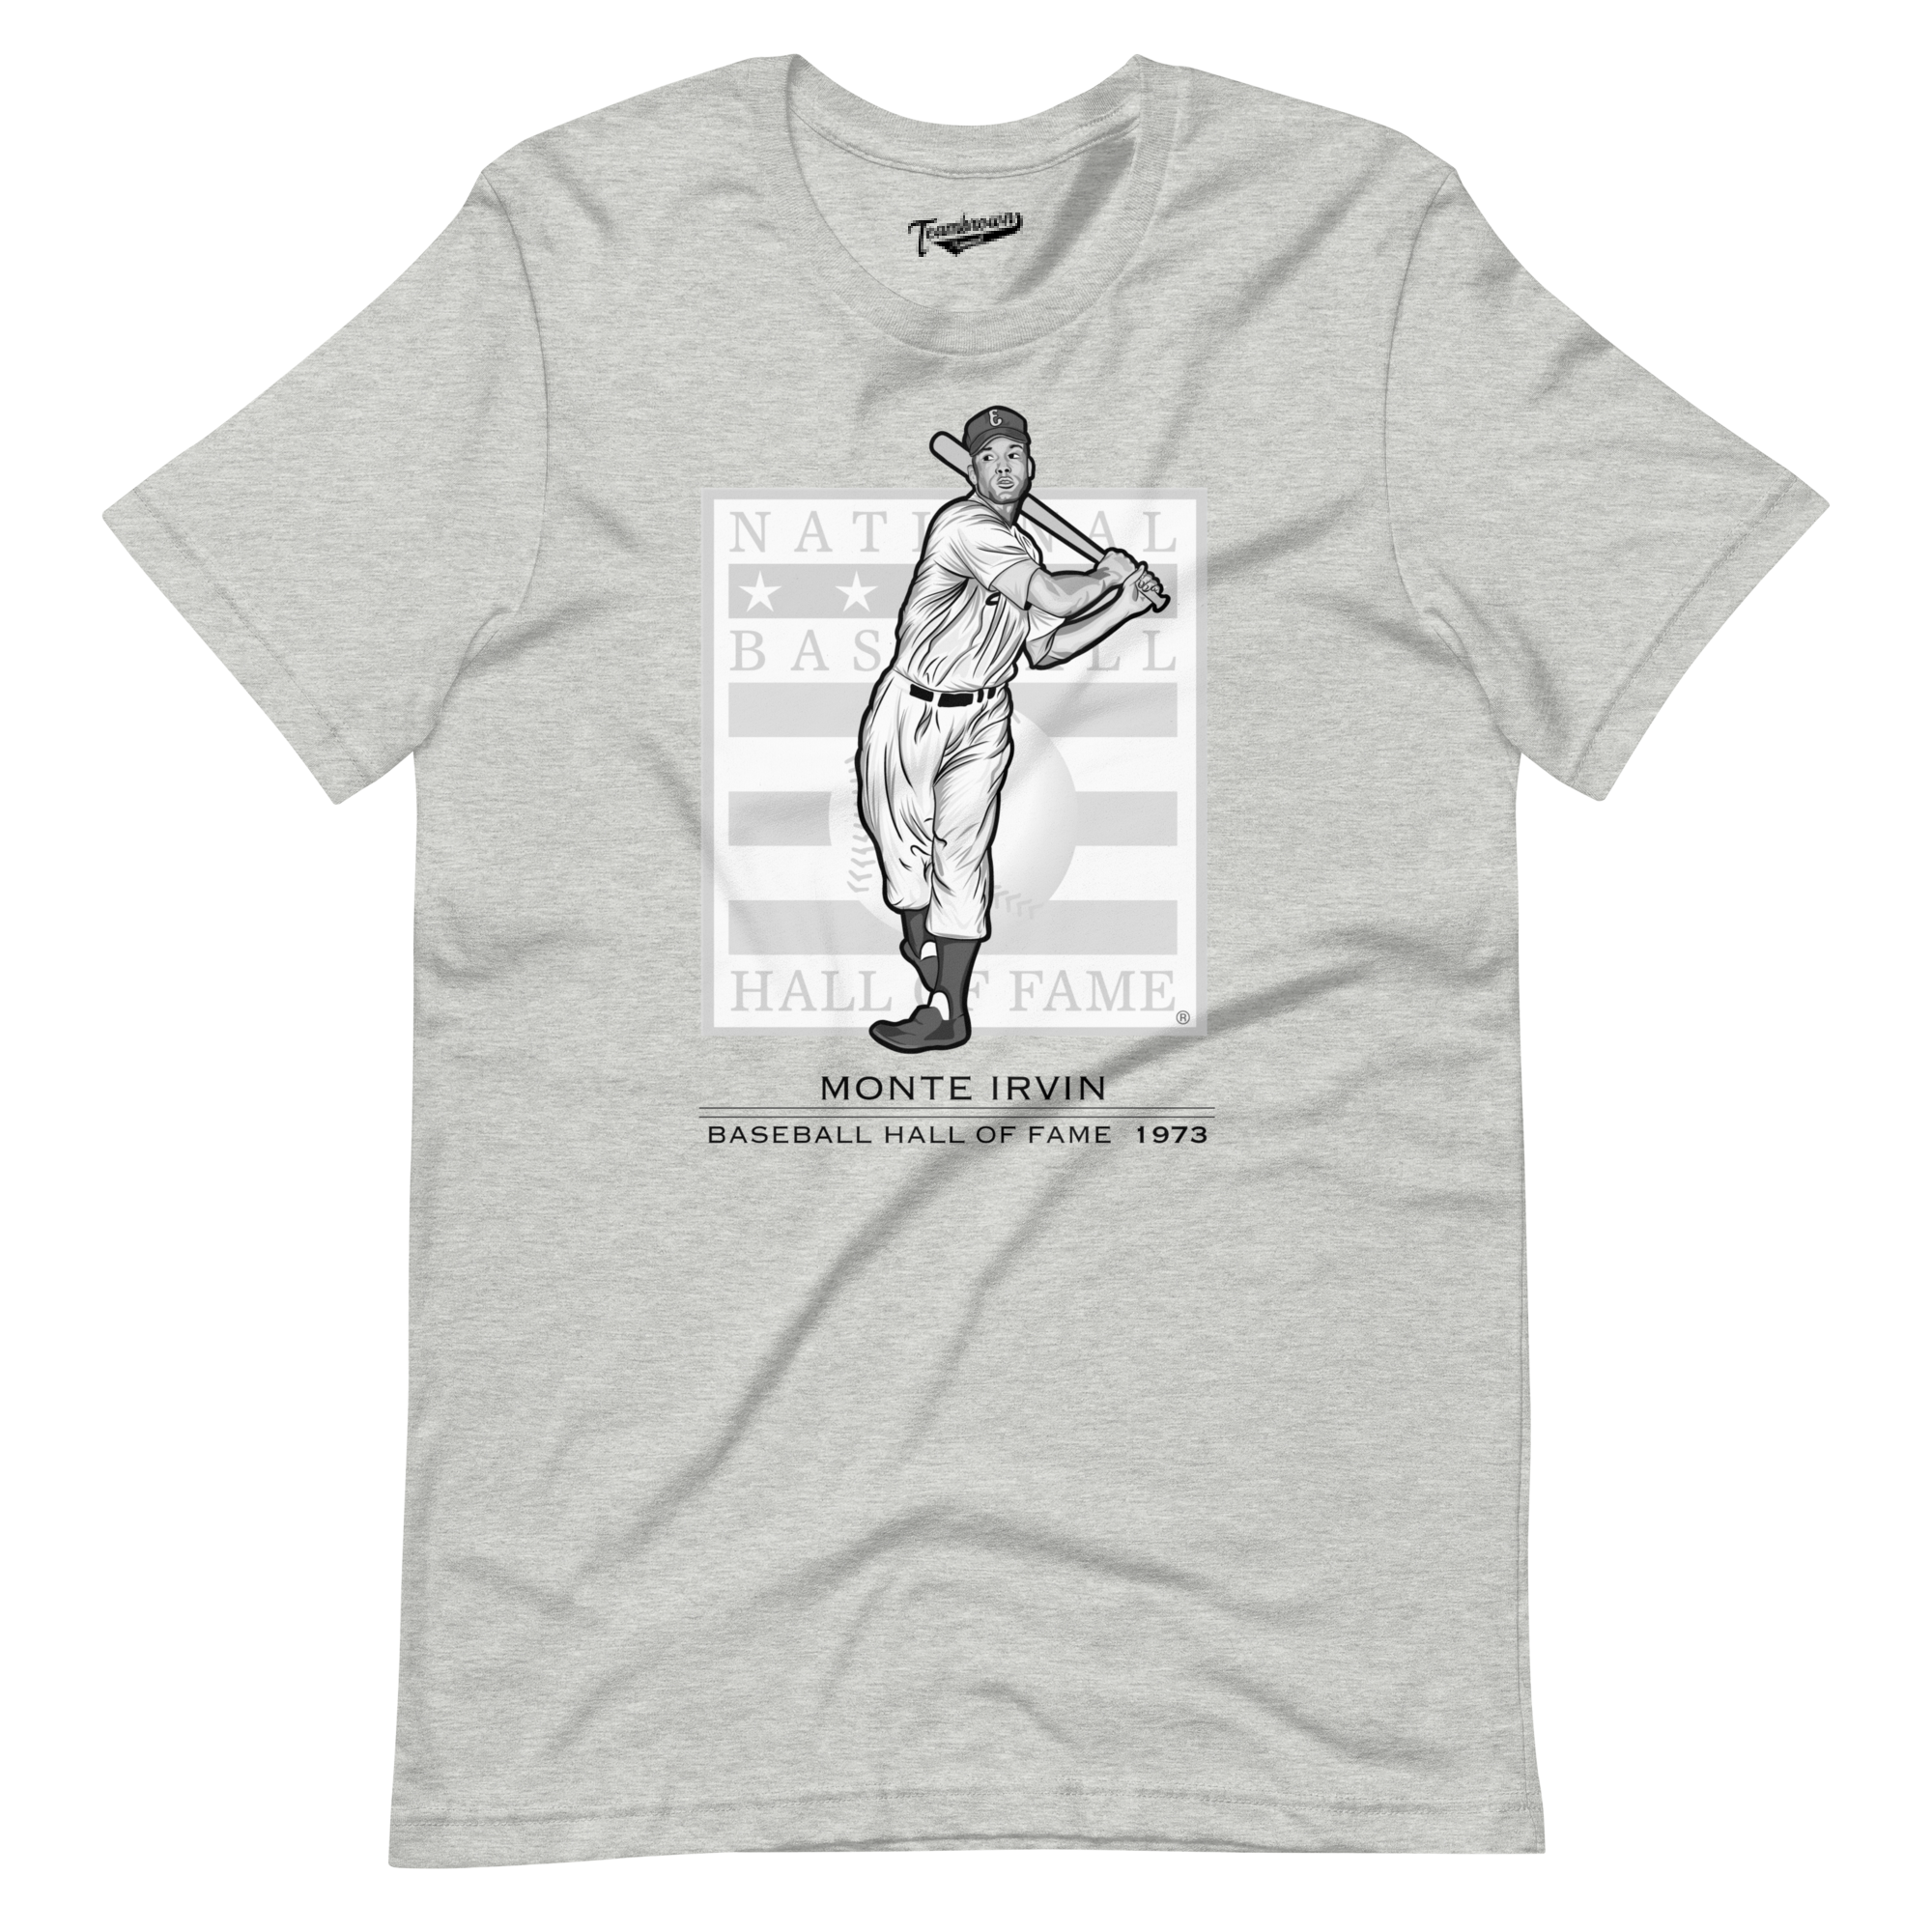 Baseball Hall of Fame Members - Monte Irvin - Unisex T-Shirt